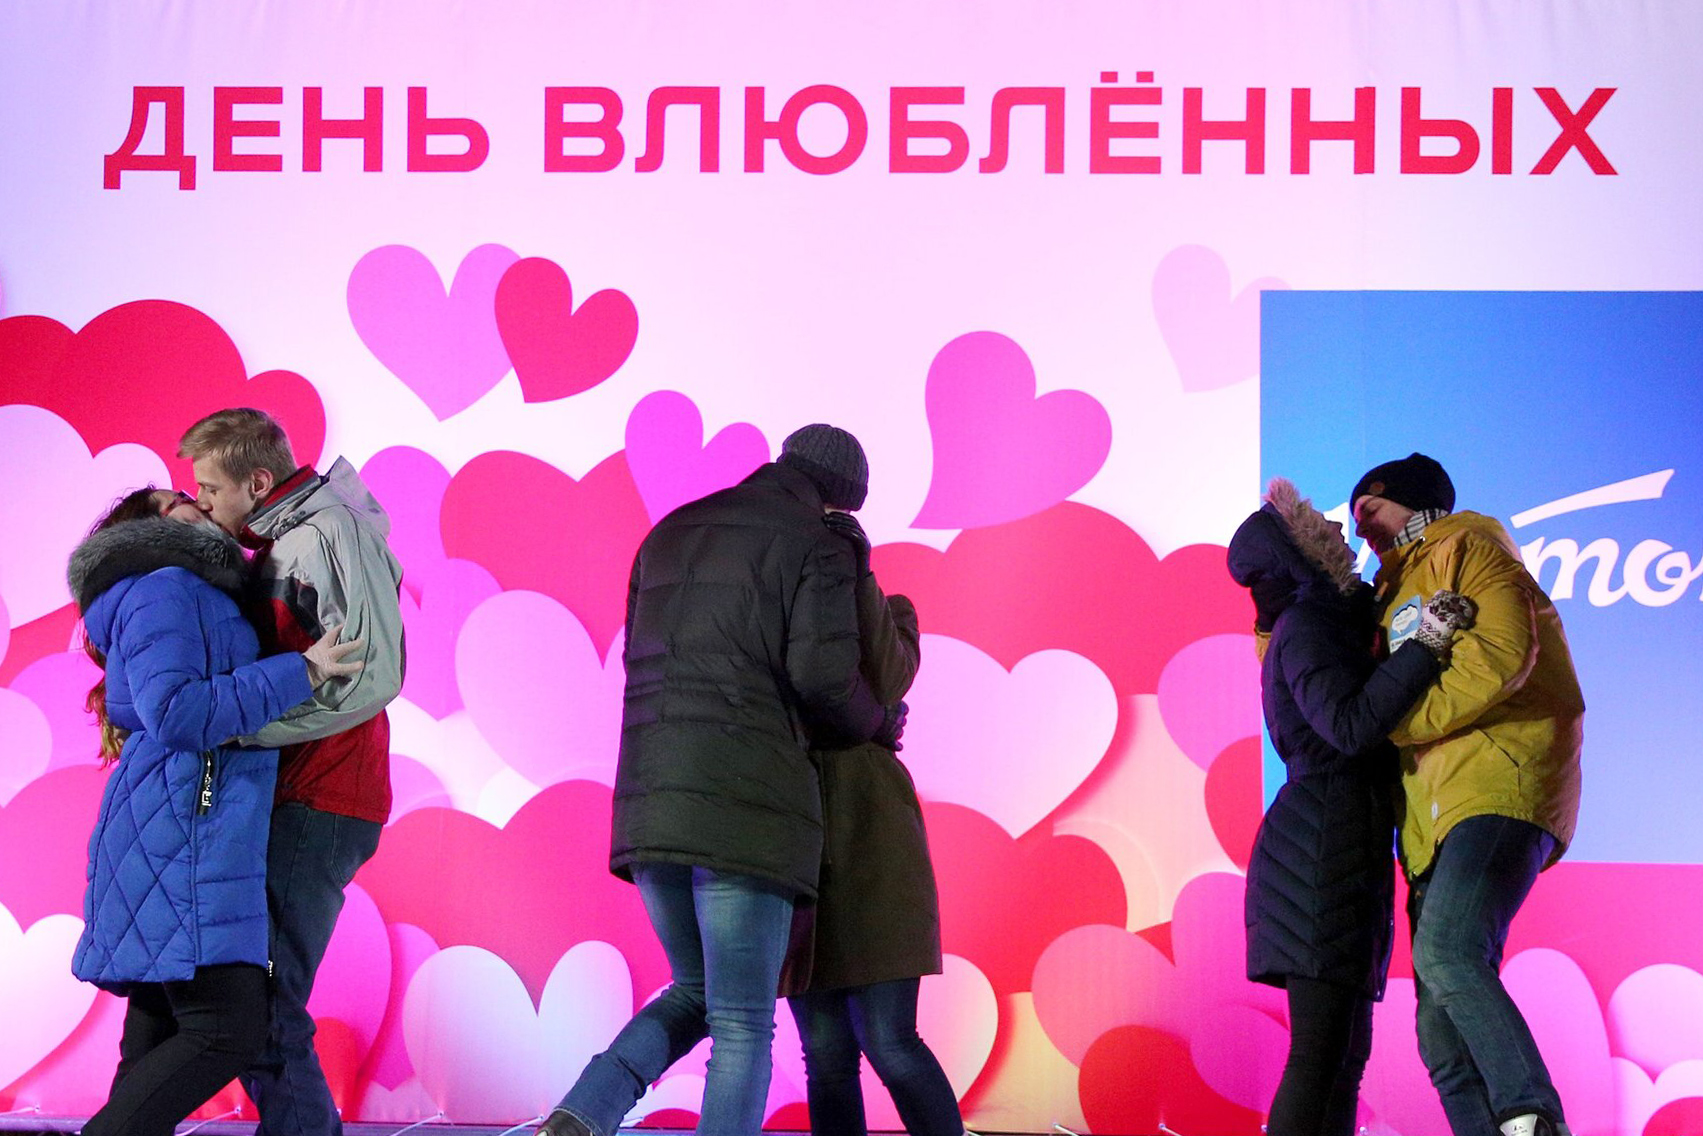 Праздник сегодня в россии 14 февраля. С днем влюбленных. 14 Февраля праздник. С днём всех влюблённых. Российский день влюбленных.